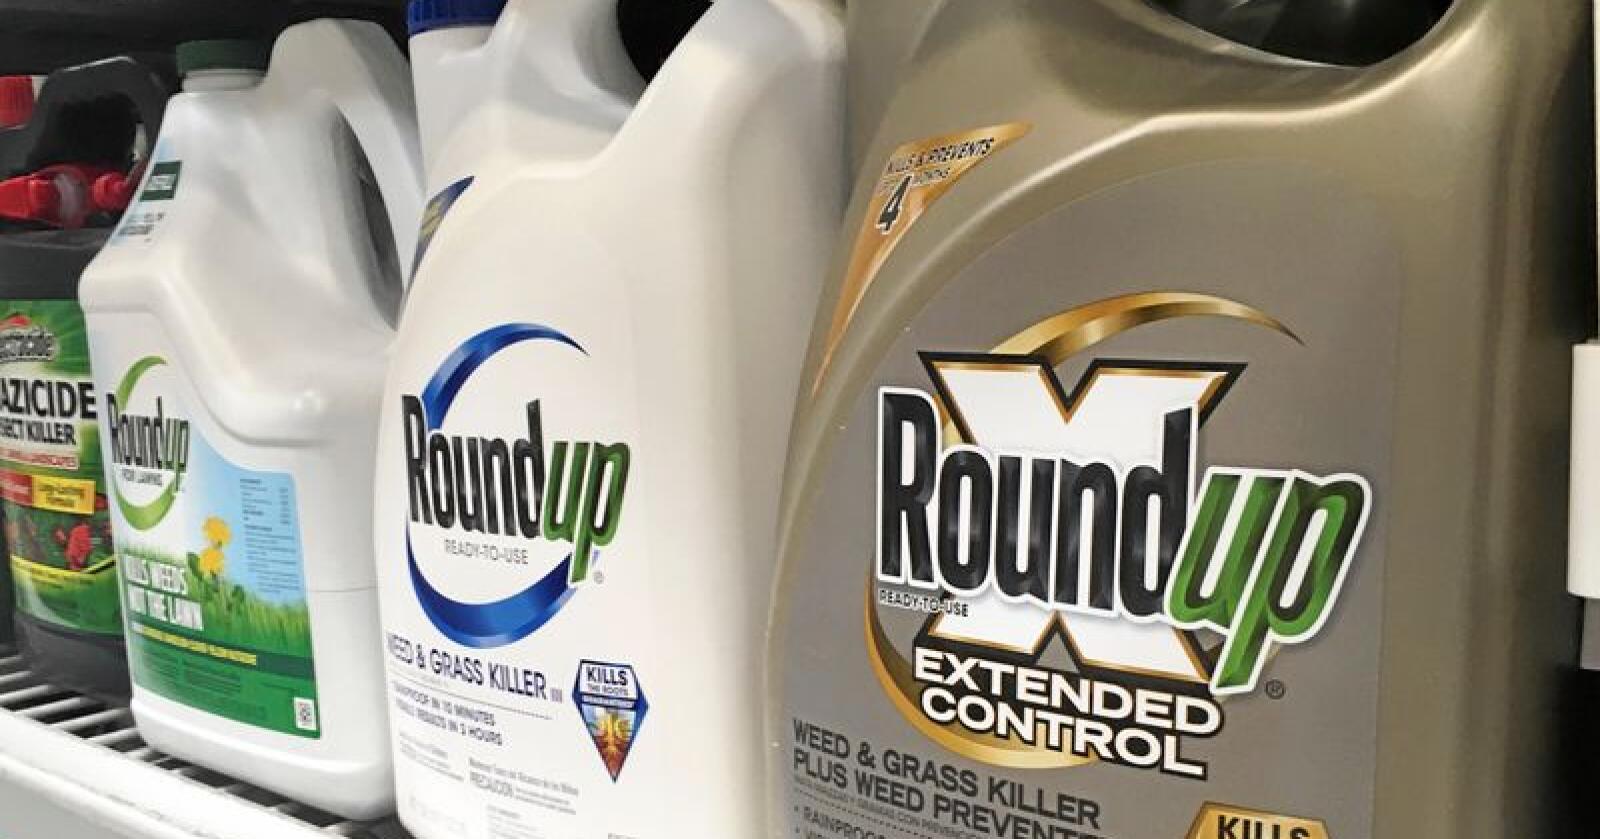 Bayer, eierne av Roundup, har tidligere blitt dømt i en lignende sak. Foto: AP Photo/Haven Daley, File